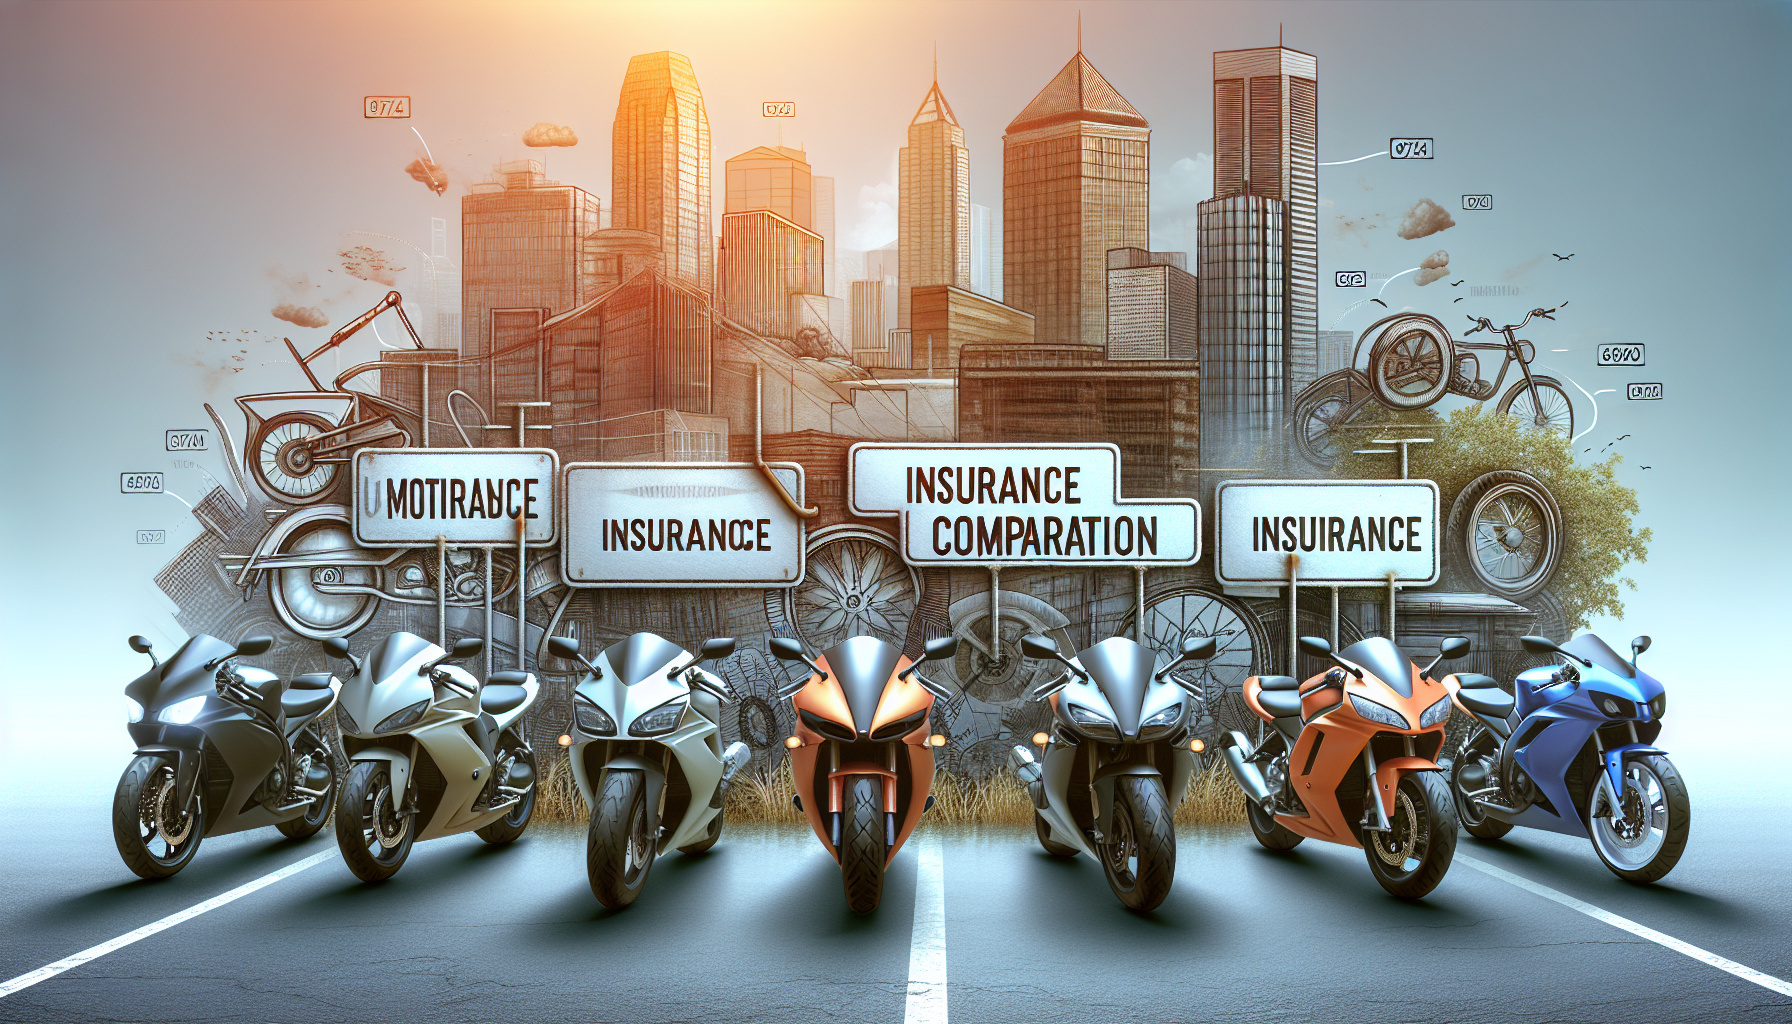 découvrez les différents types d'assurance moto 97420 avec notre comparateur. trouvez l'assurance moto adaptée à vos besoins en quelques clics. profitez de la meilleure protection pour votre moto 97420.